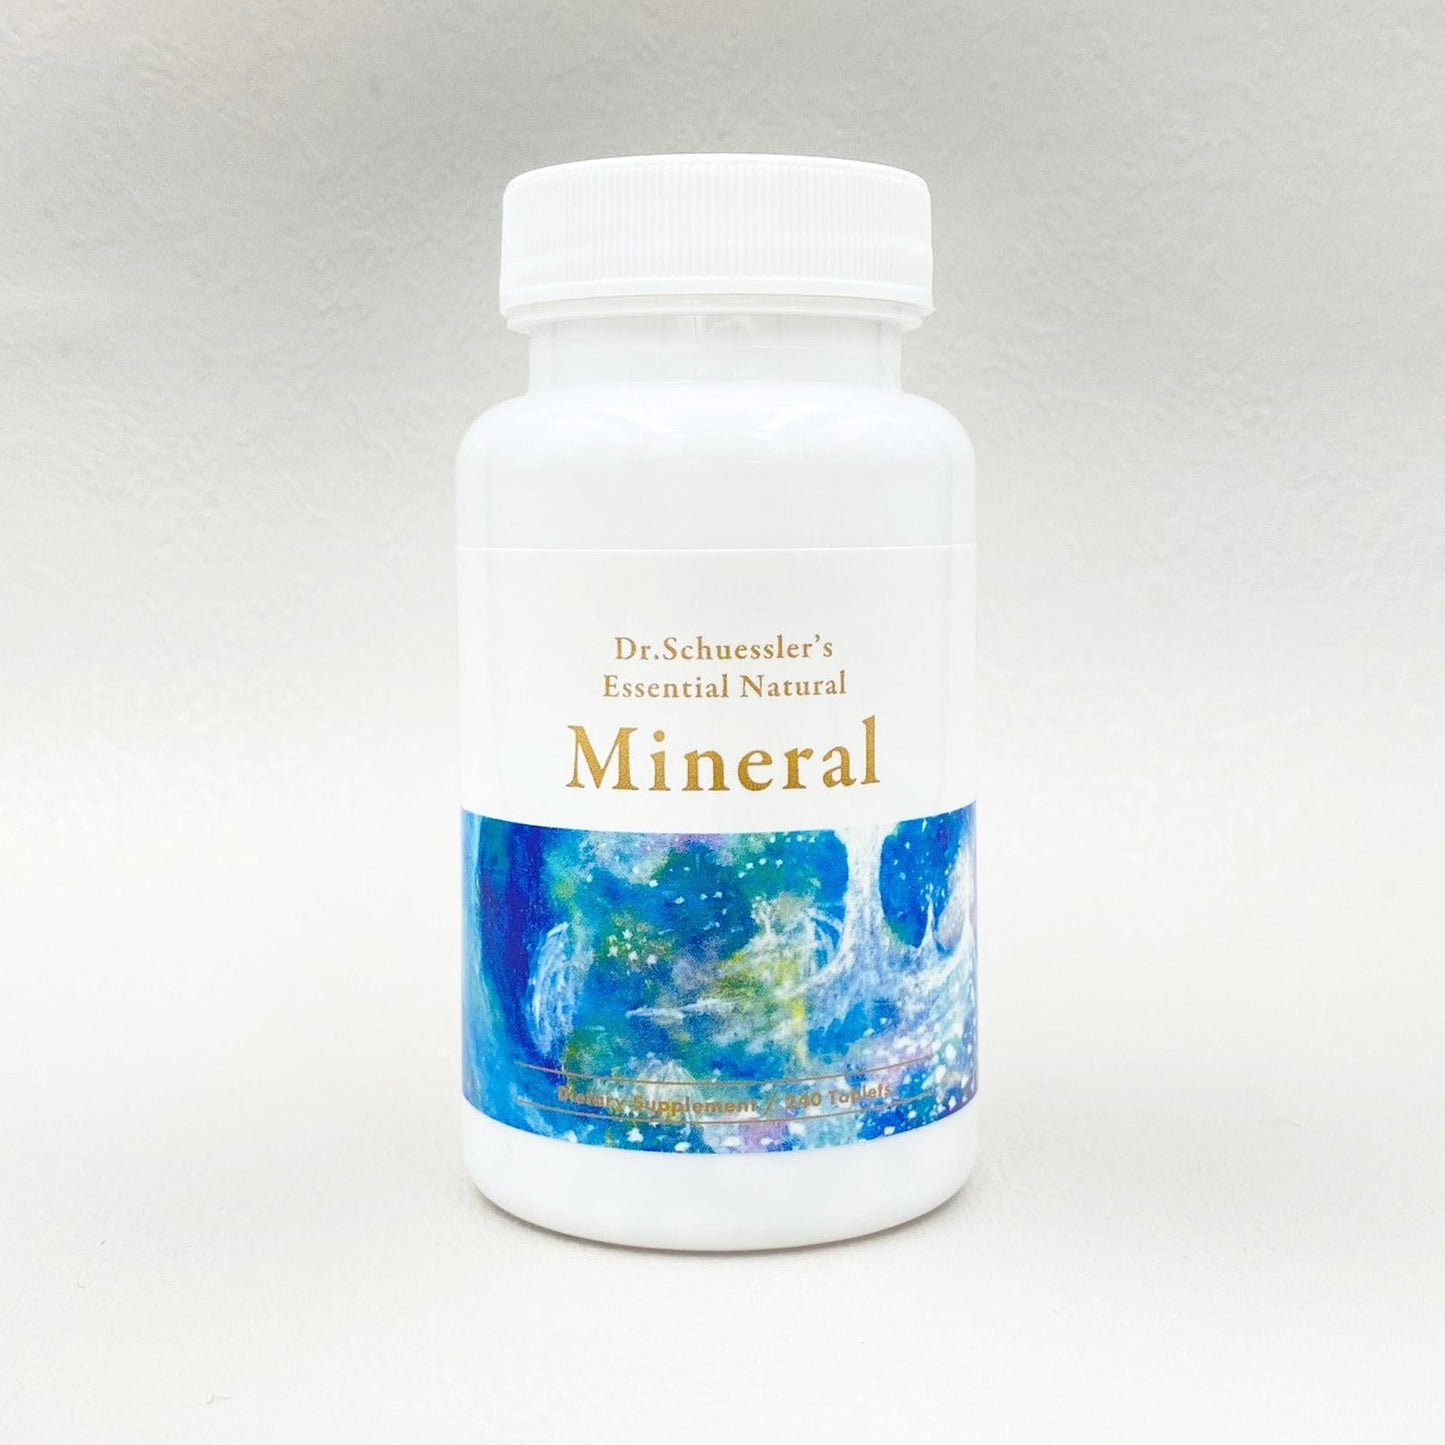 Dr.Schuessler’s Essential Natural Mineral